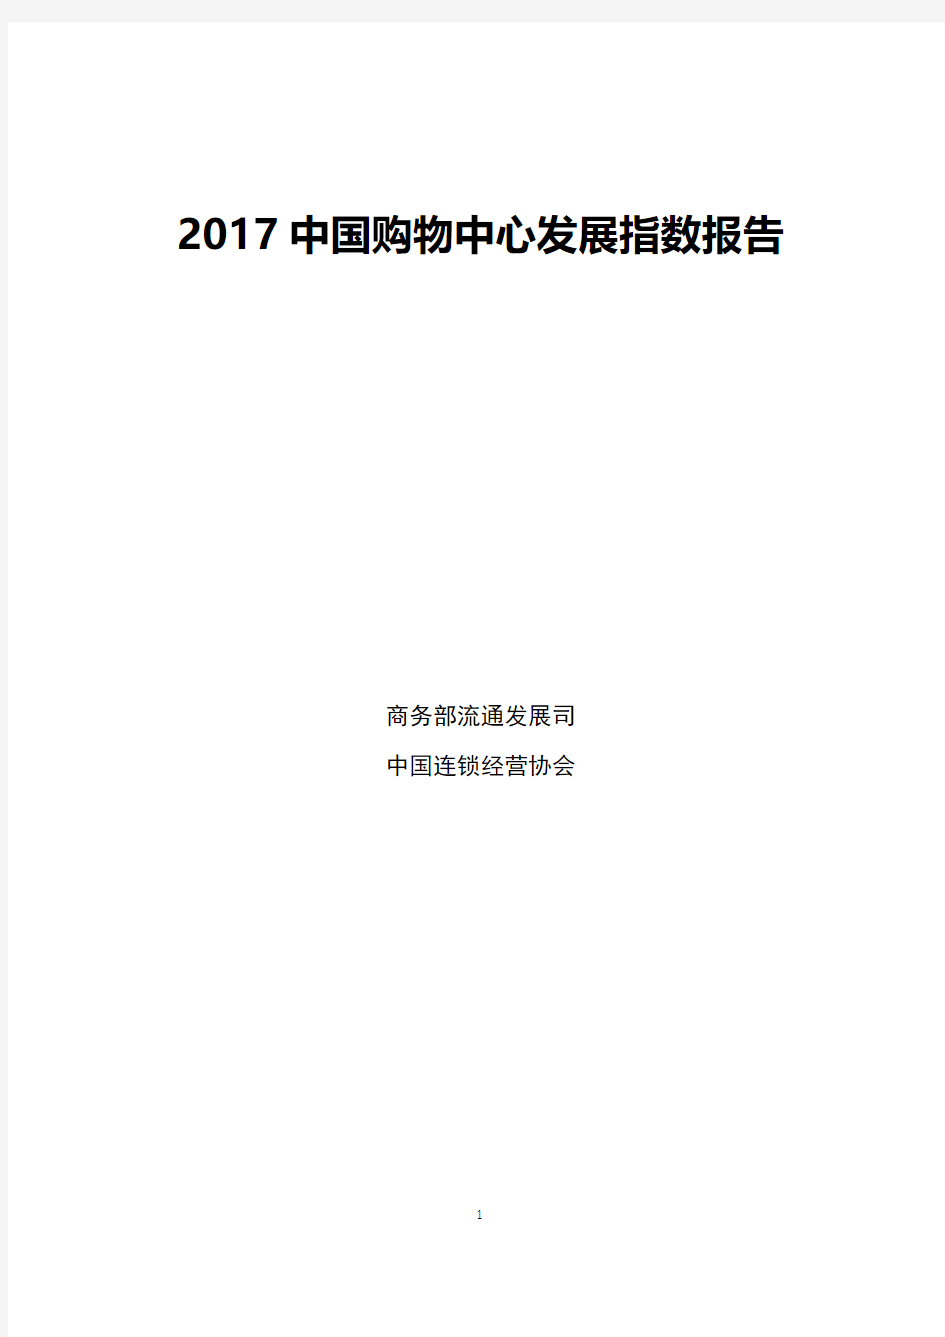 2017中国购物中心发展指数报告